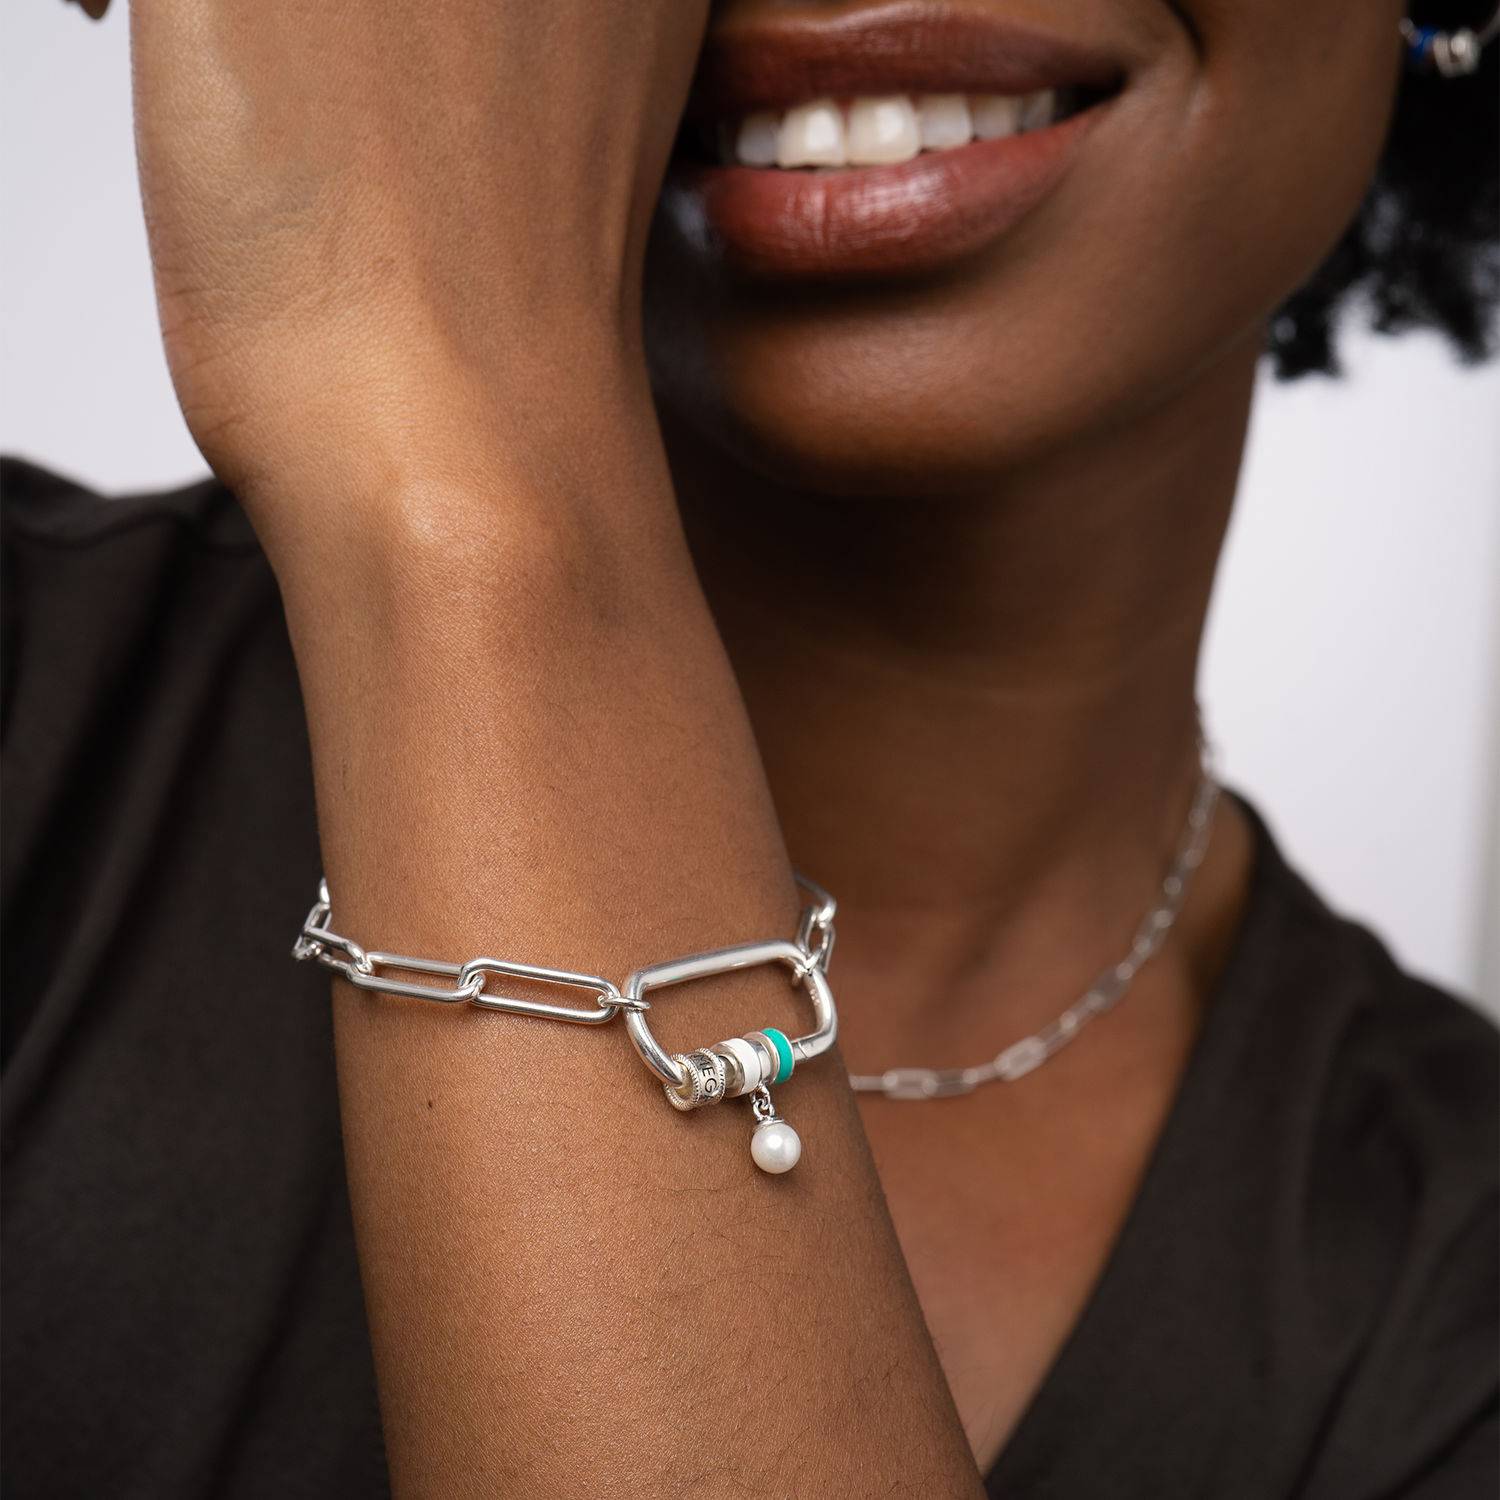 Linda armband met ovale sluiting en diamant in sterling zilver-4 Productfoto